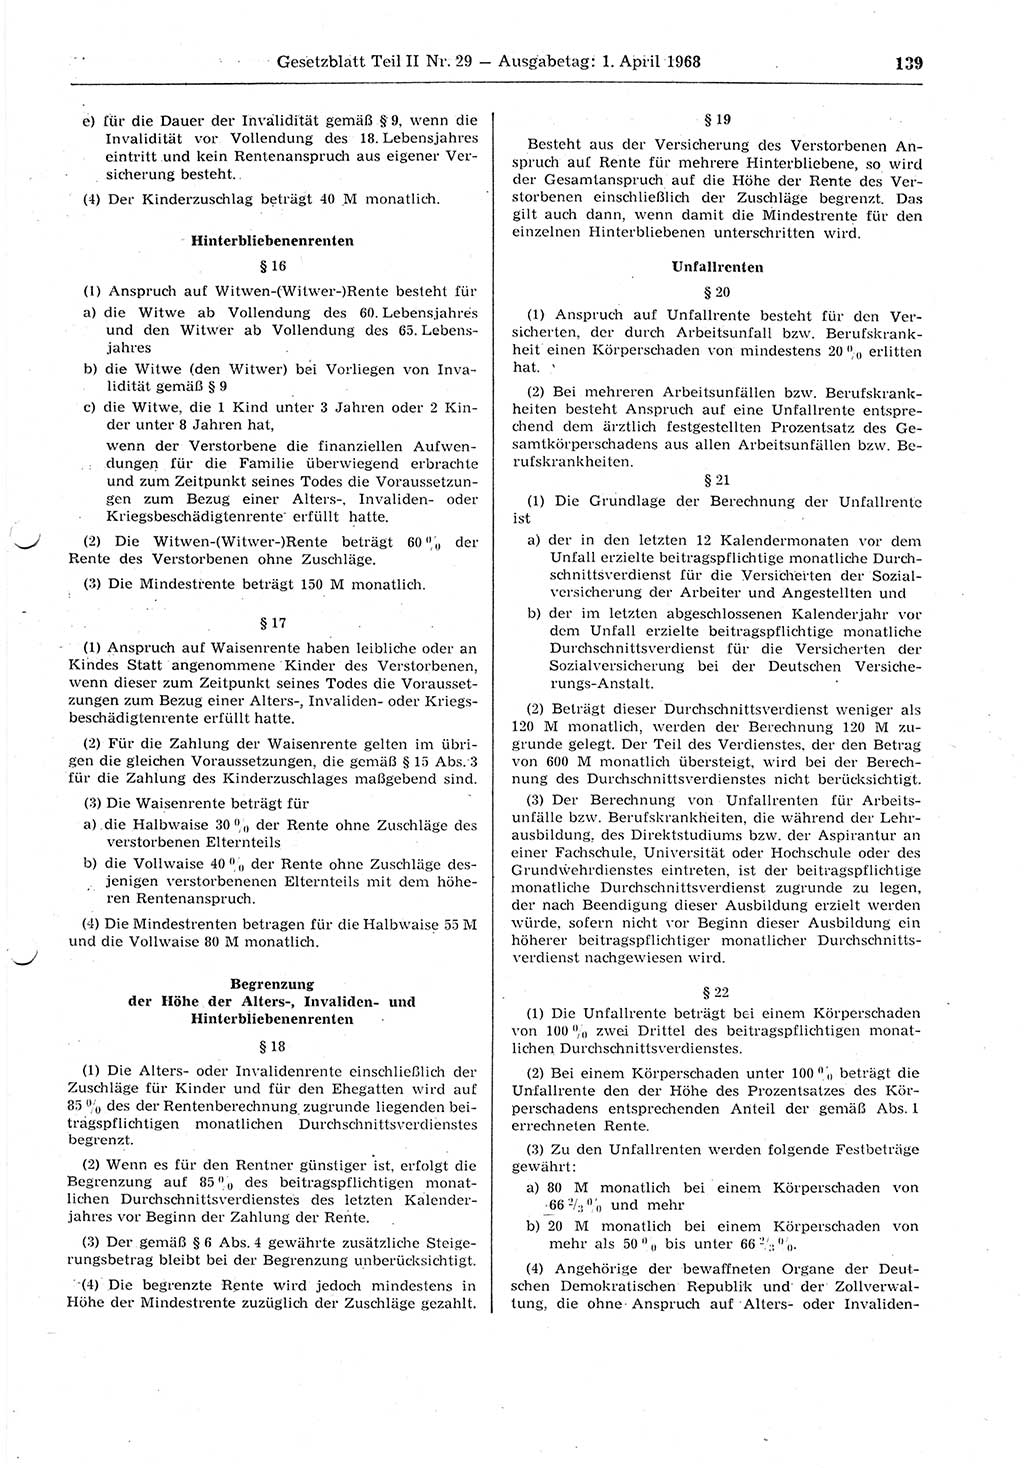 Gesetzblatt (GBl.) der Deutschen Demokratischen Republik (DDR) Teil ⅠⅠ 1968, Seite 139 (GBl. DDR ⅠⅠ 1968, S. 139)